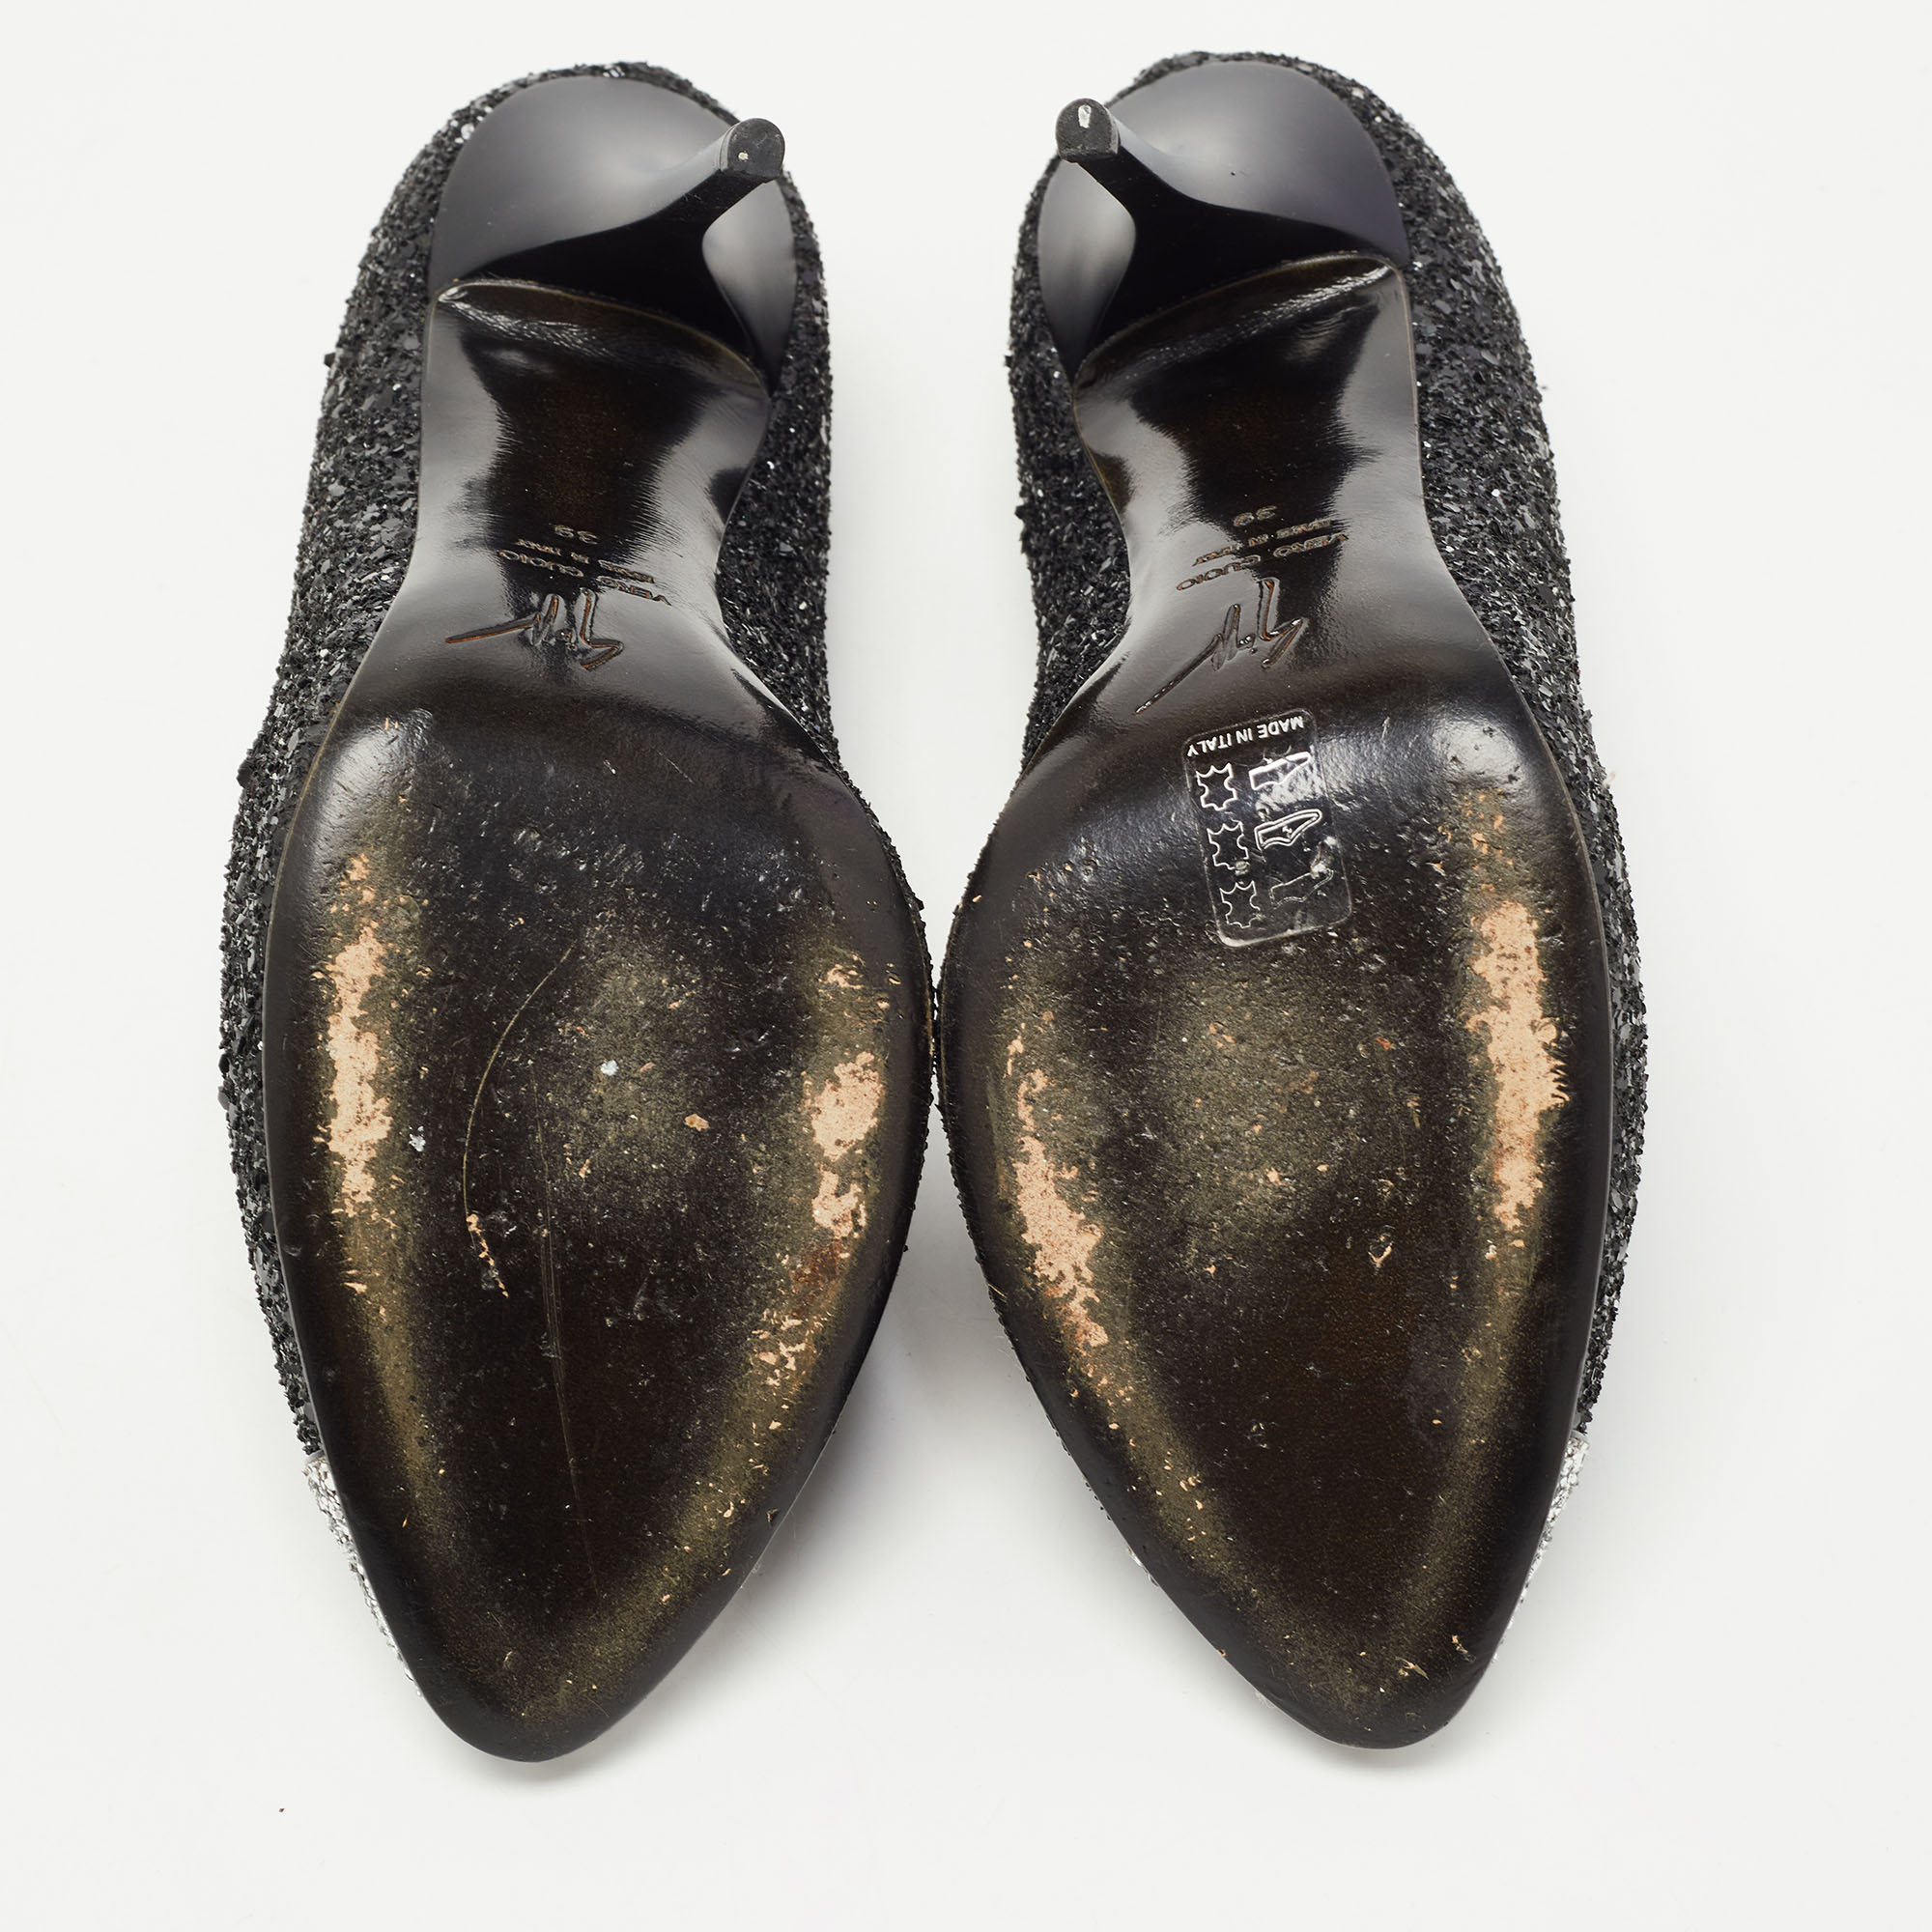 Giuseppe Zanotti Black/Silver Coarse Glitter Cap Toe Pumps Size 39